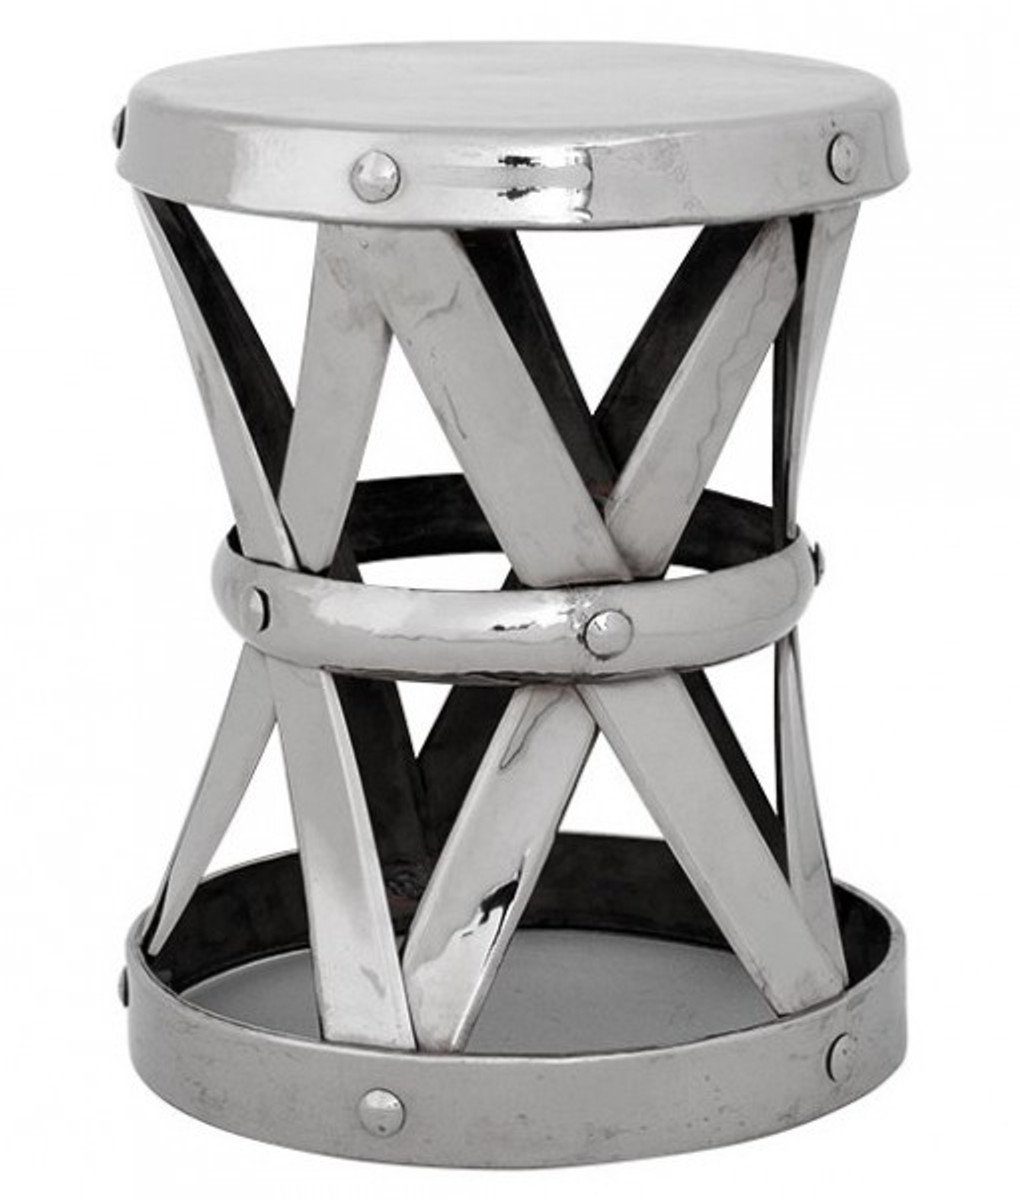 Beistelltisch Beistelltisch Designer 44cm Casa Padrino Sitzhocker Durchmesser Höhe / 53cm, Luxus - Hocker Finish Edelstahl Nickel - Silber